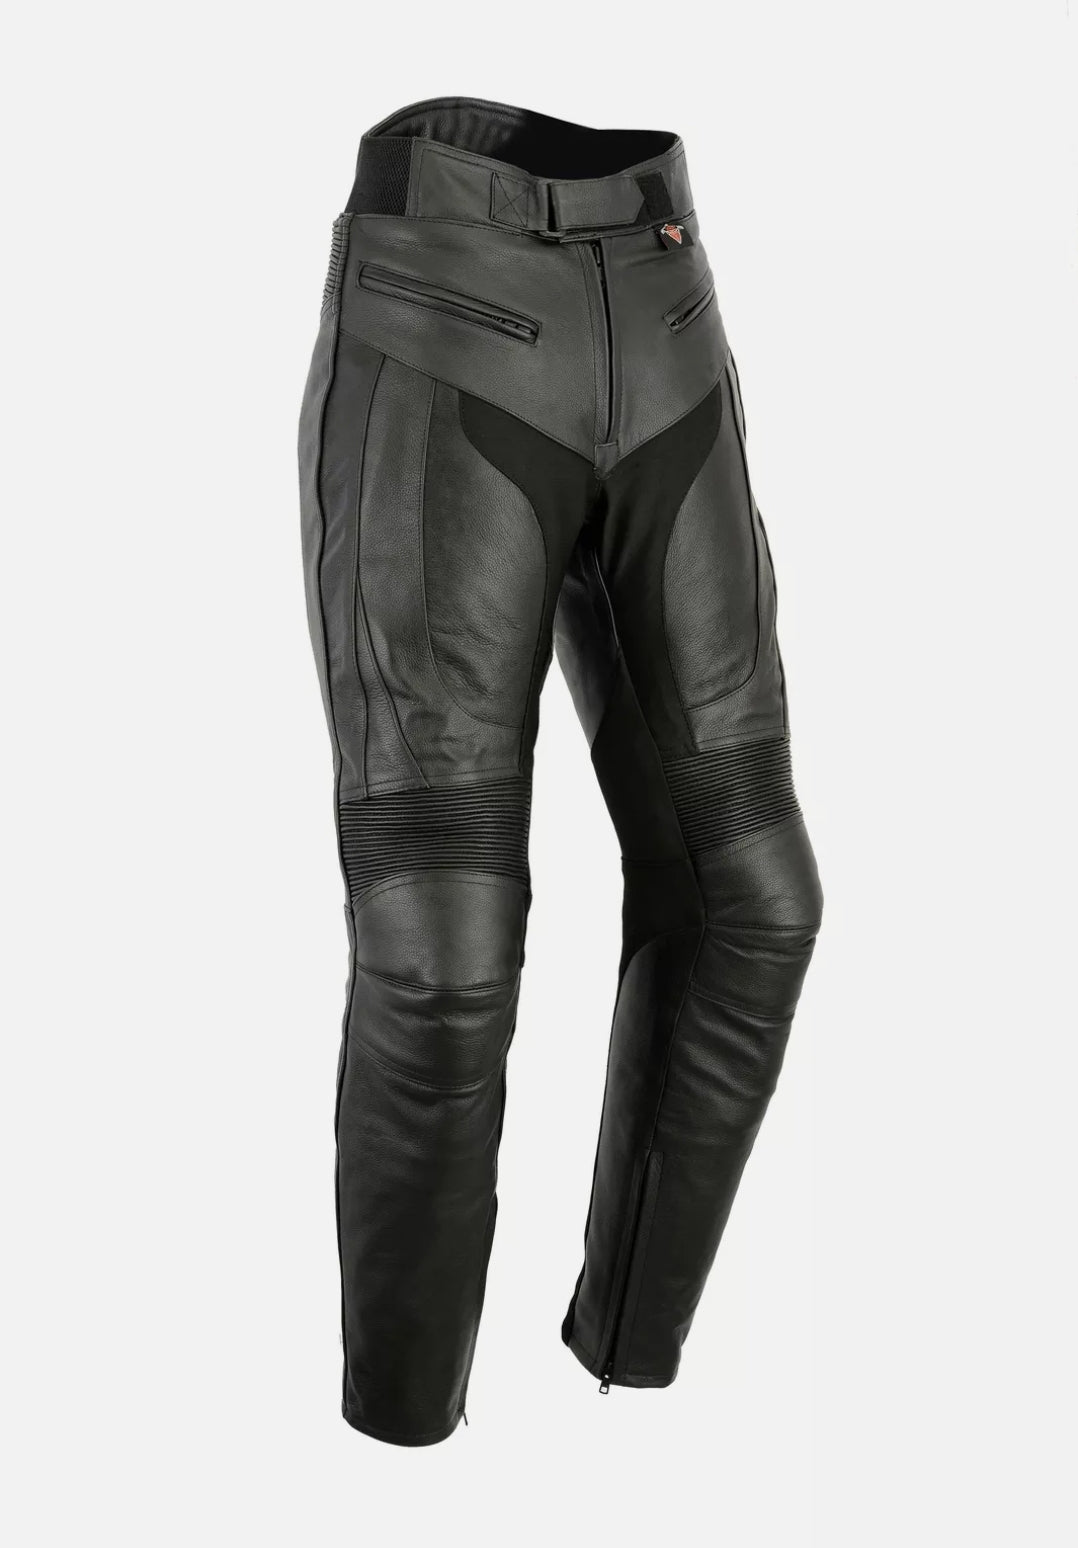 KLIM Men039s Carlsbad Motorcycle Pants  eBay